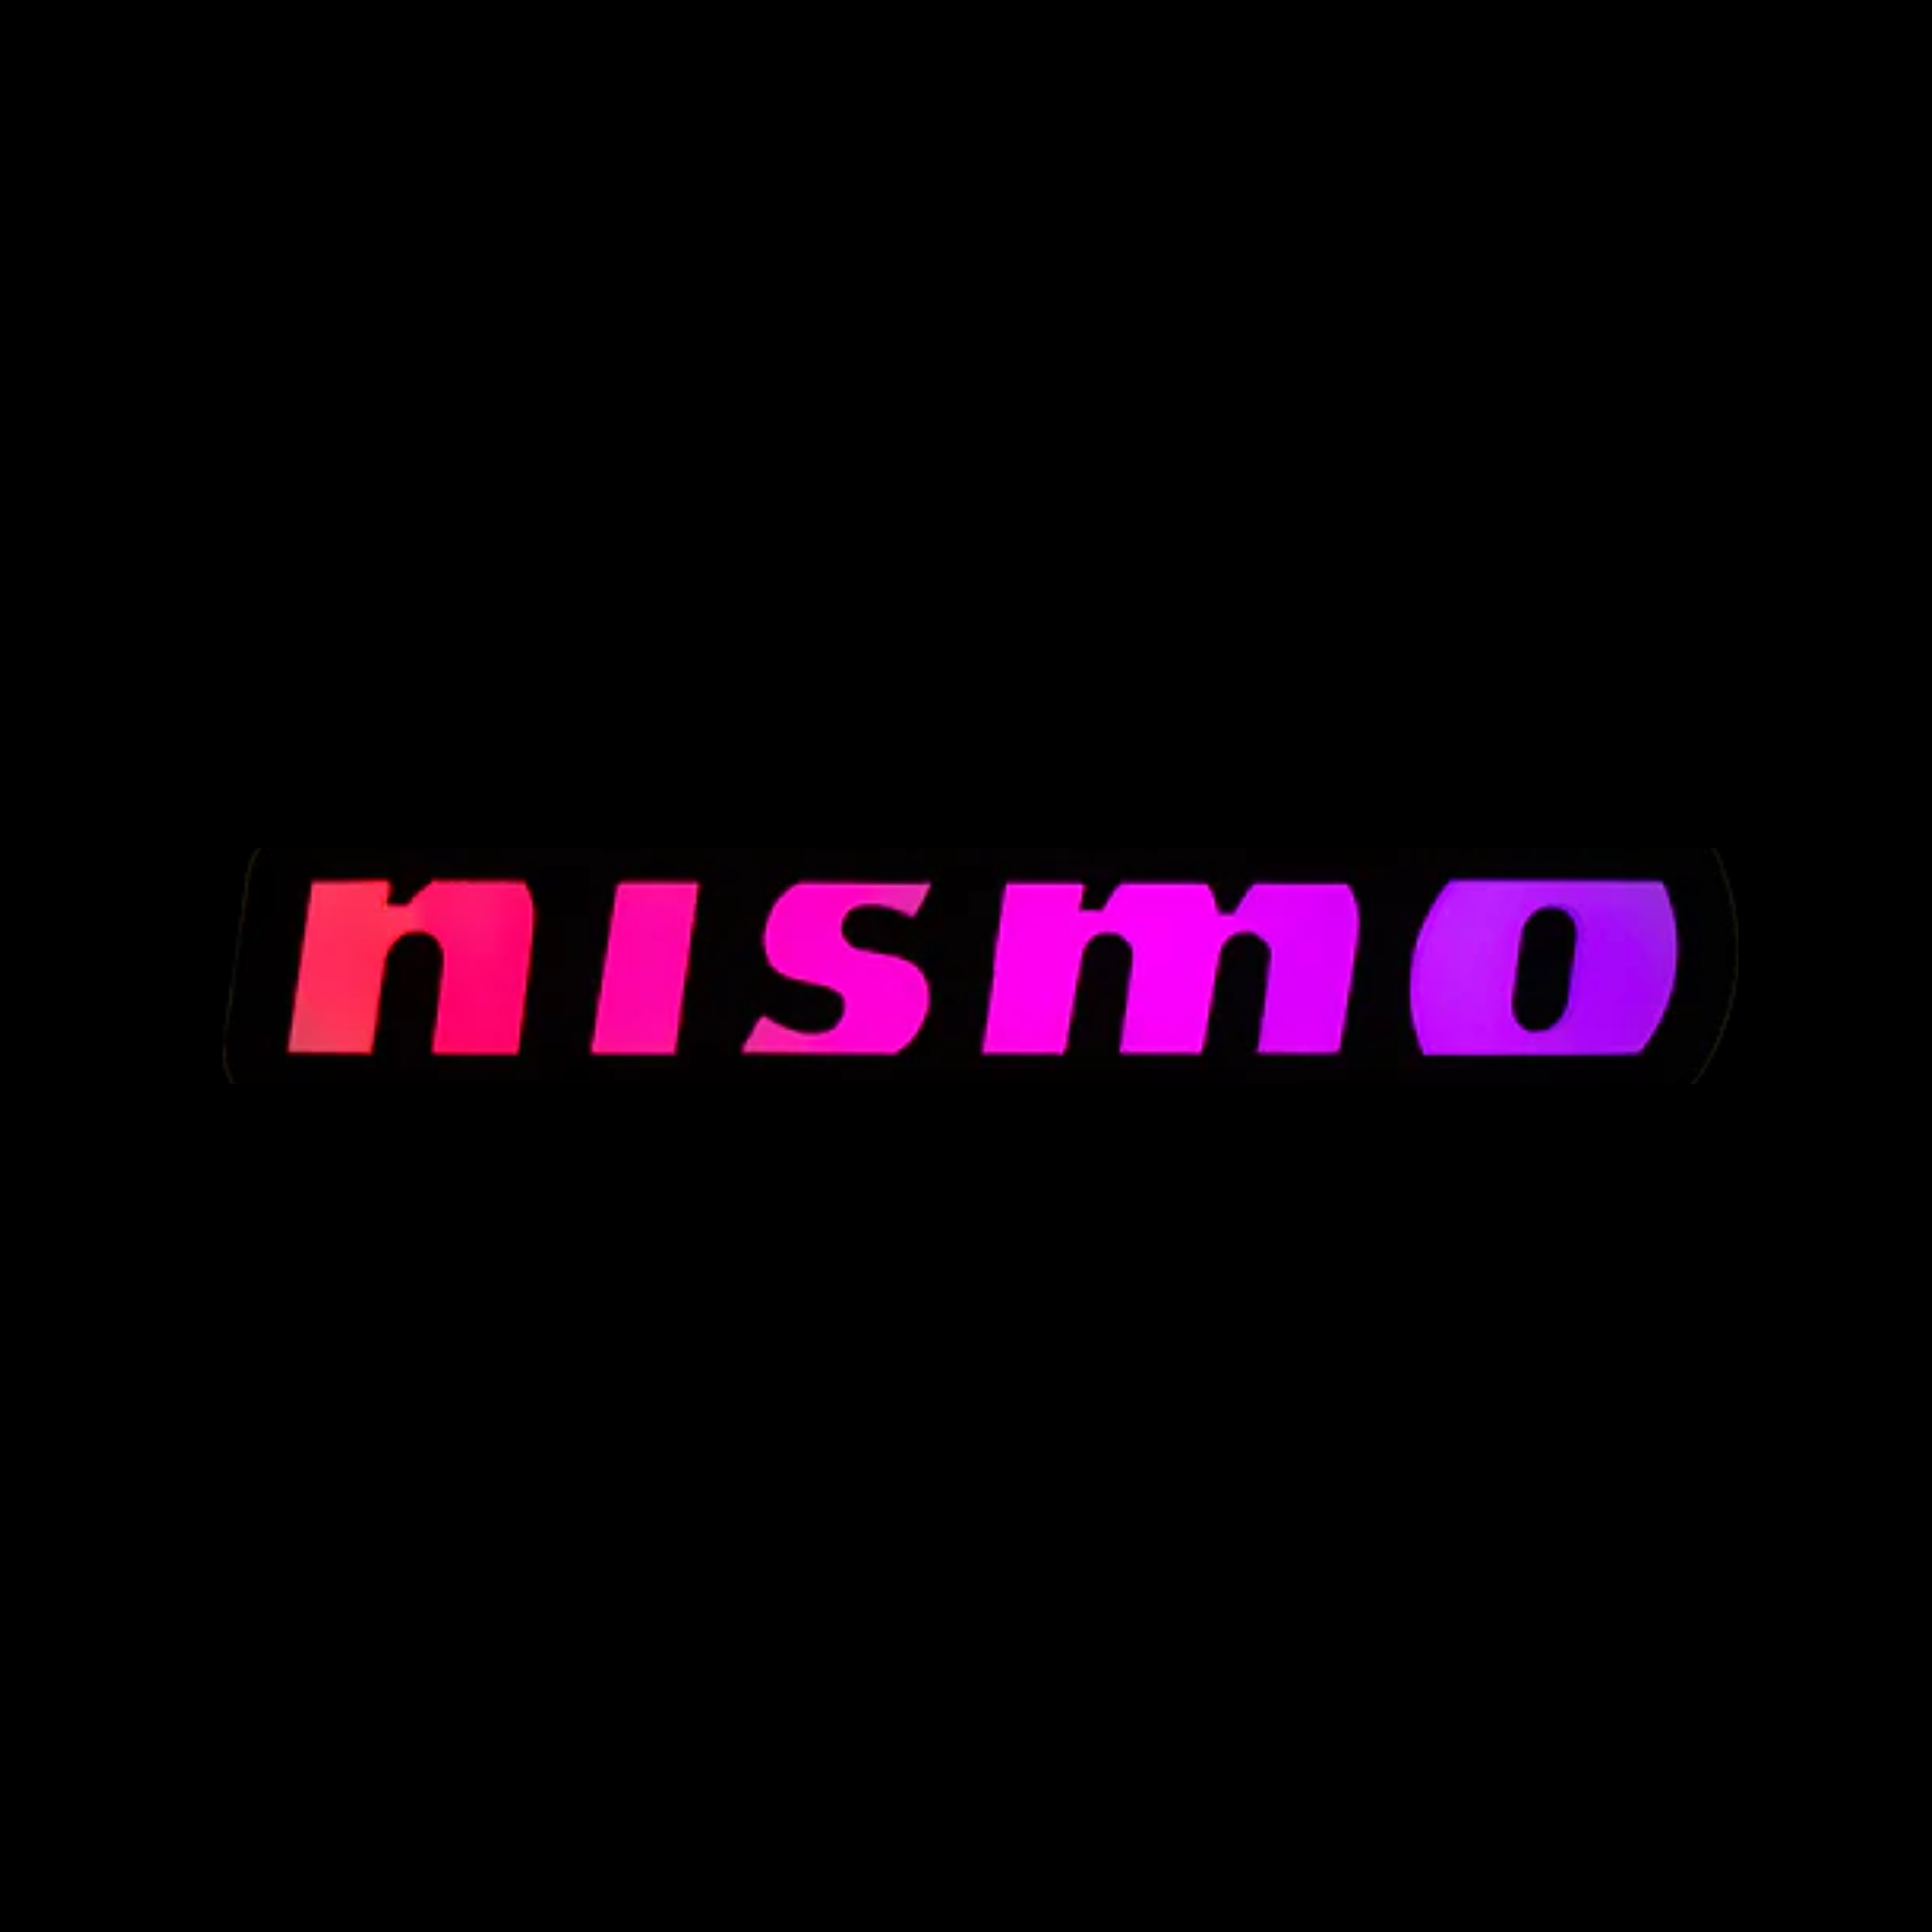 Nismo Badge: Illuminated Multicolor LED Badge